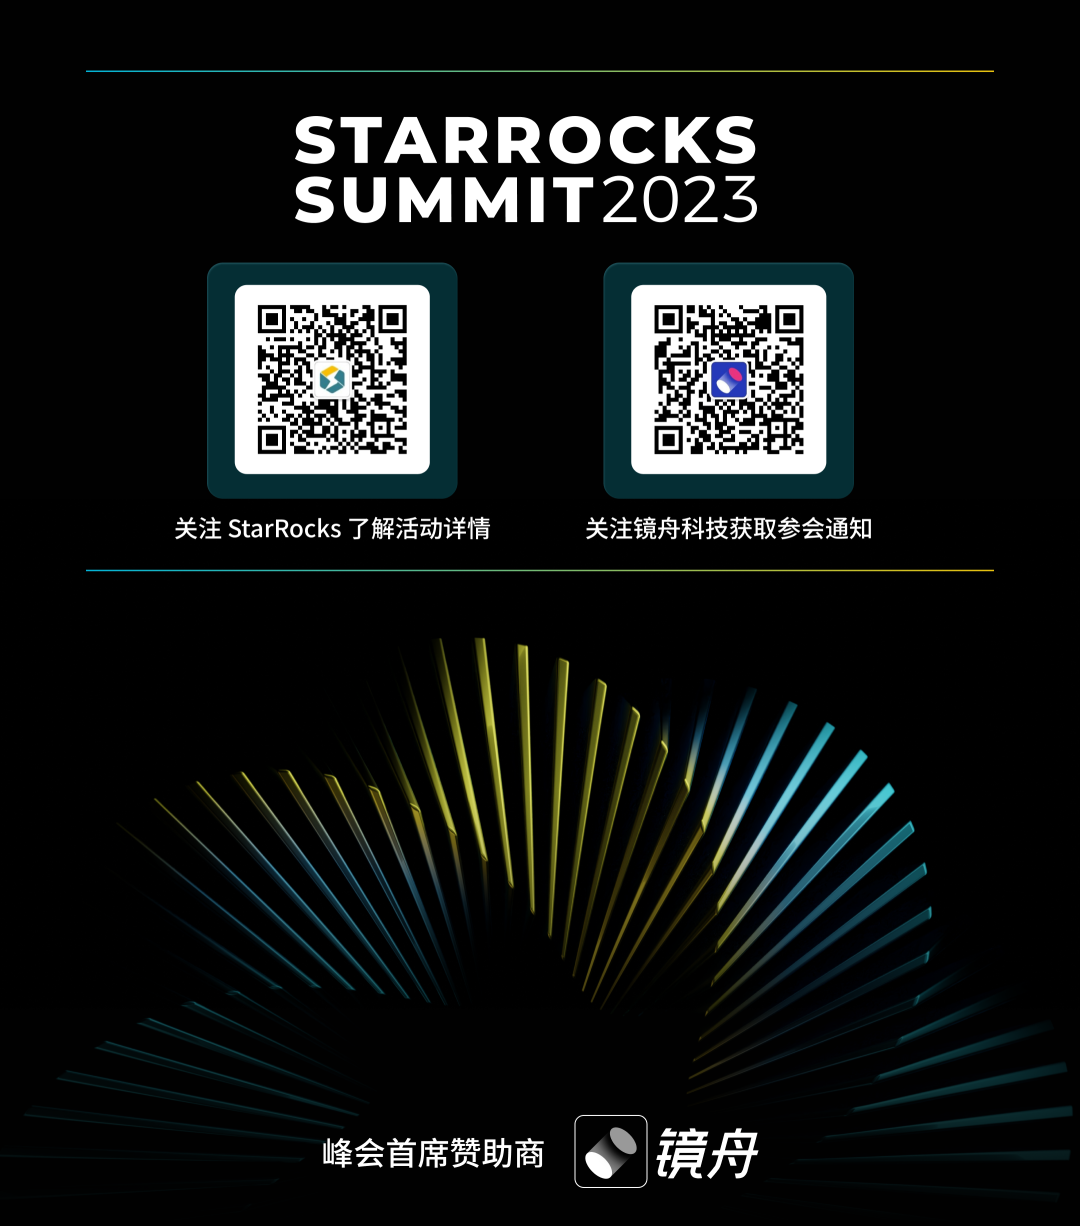 40+专家齐聚共谋数据未来，StarRocks Summit 2023 议程公布！更多精彩议题等你探索...